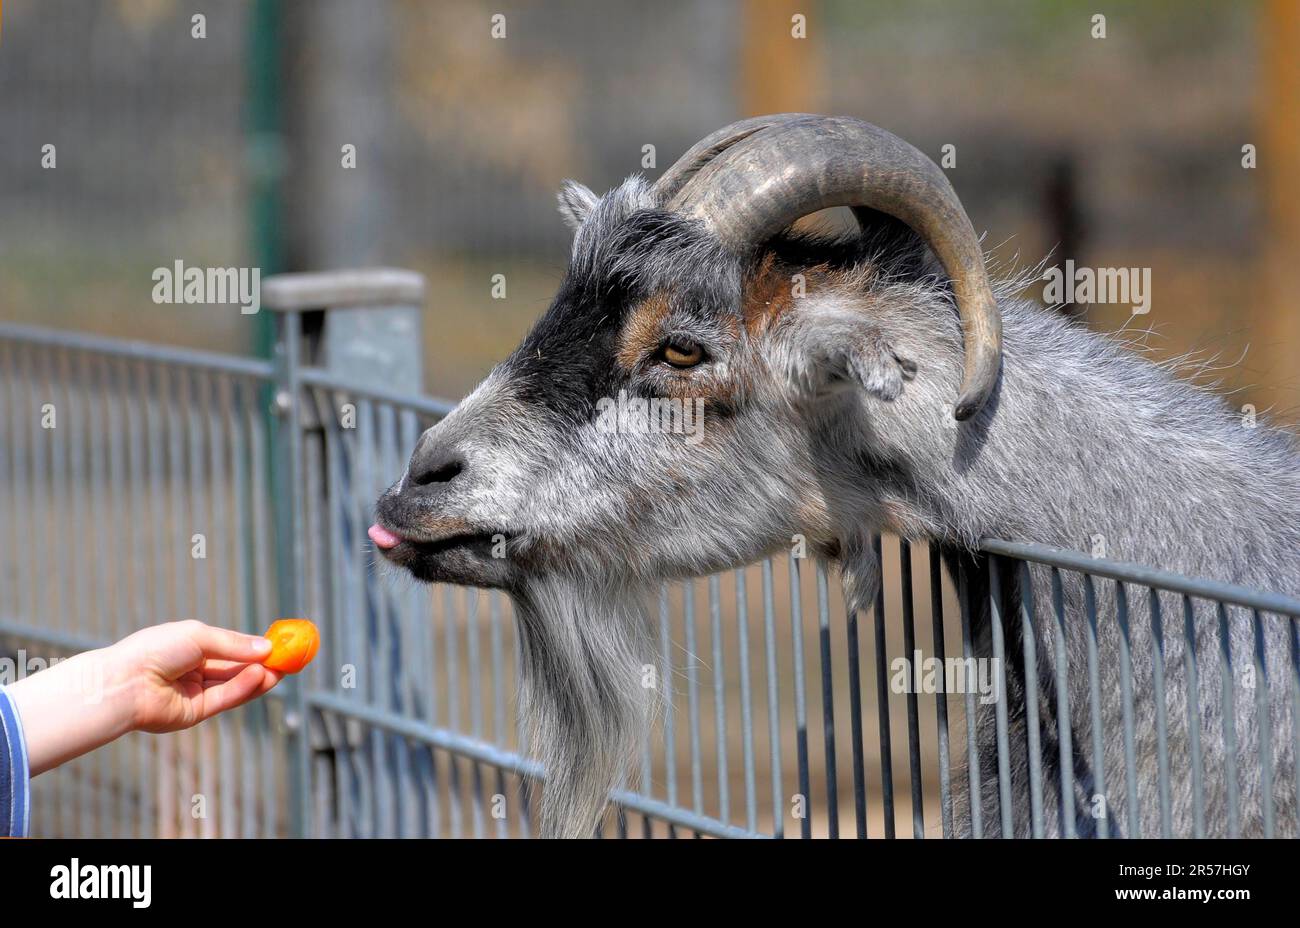 Alimentation, chèvre dans le parc animalier, garçon avec alimentation de chèvre Banque D'Images